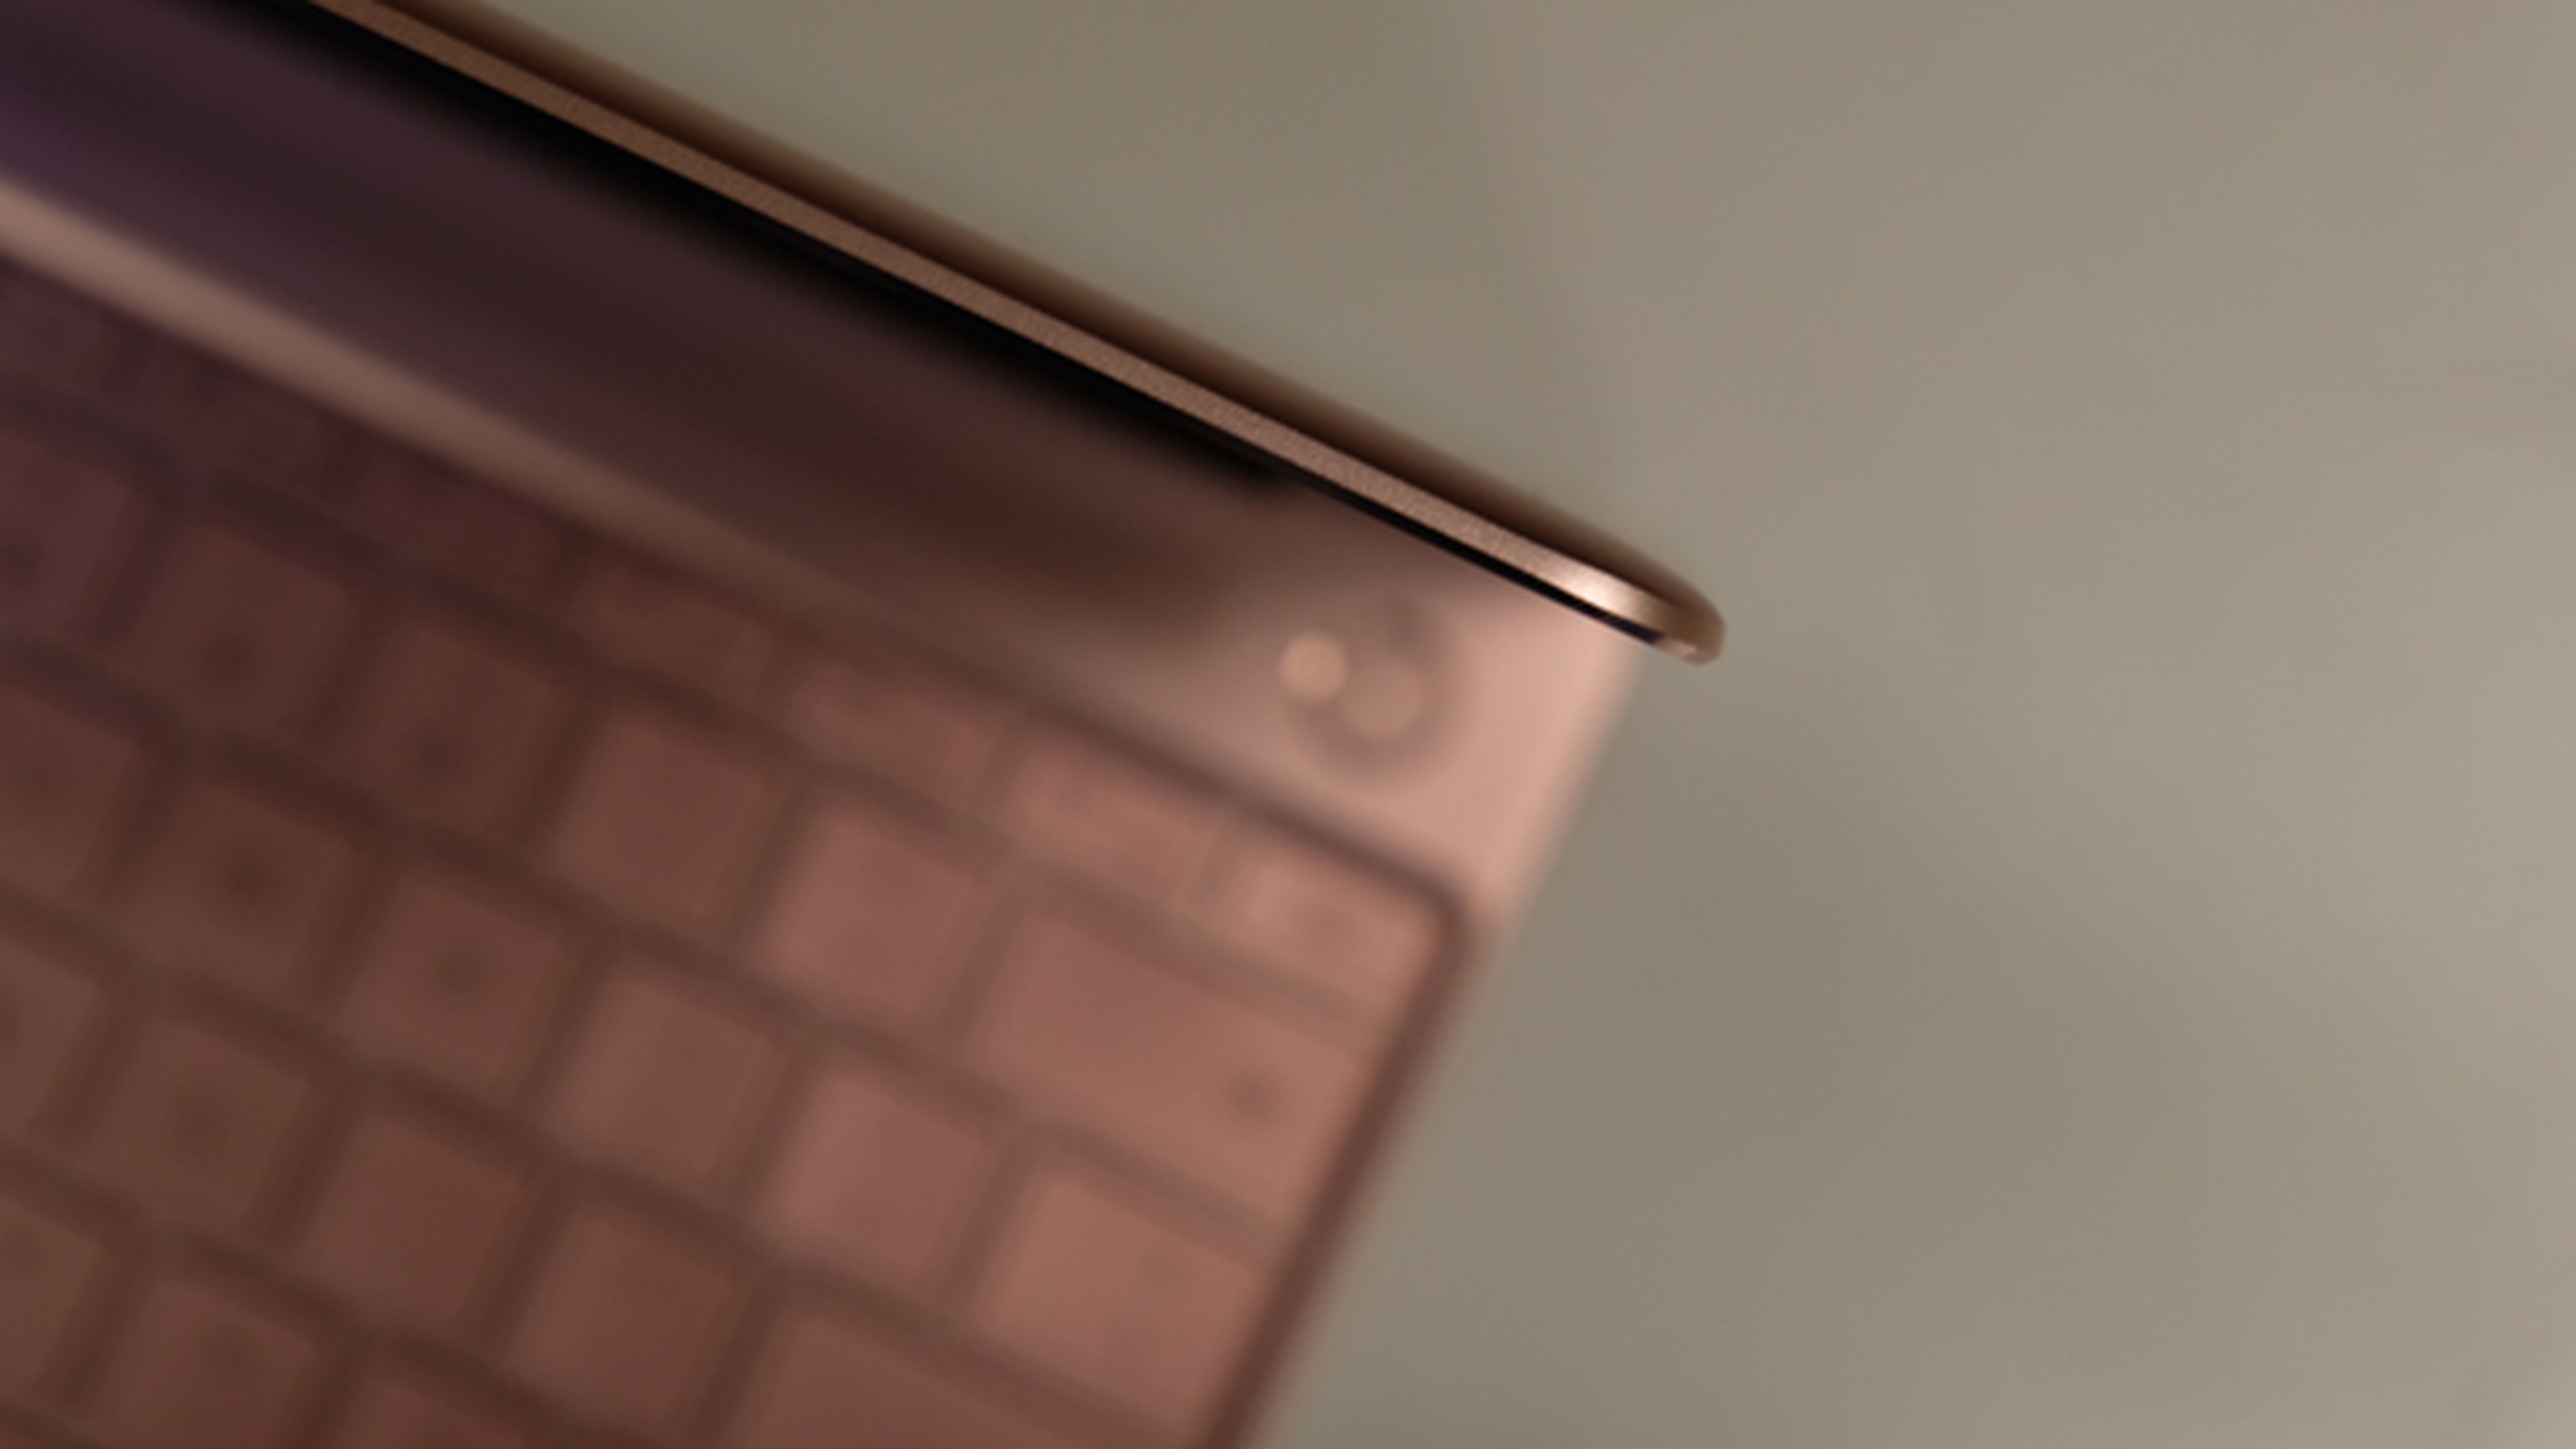 Todo el diseño de este Huawei MateBook X llama la atención por lo delgado de su grosor